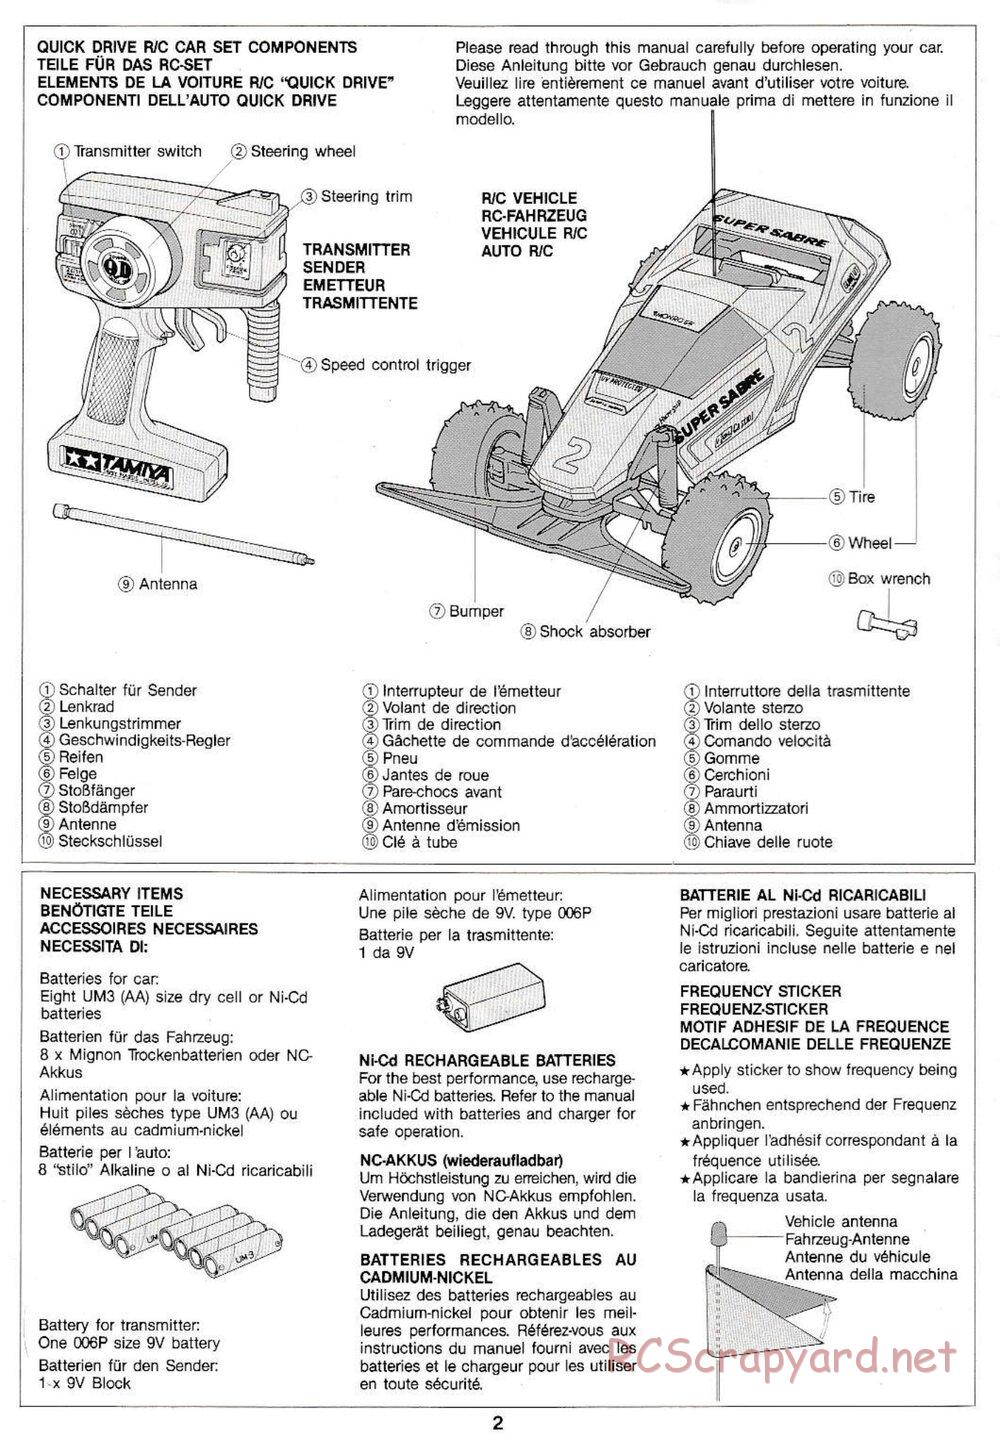 Tamiya - Super Sabre QD Chassis - Manual - Page 2